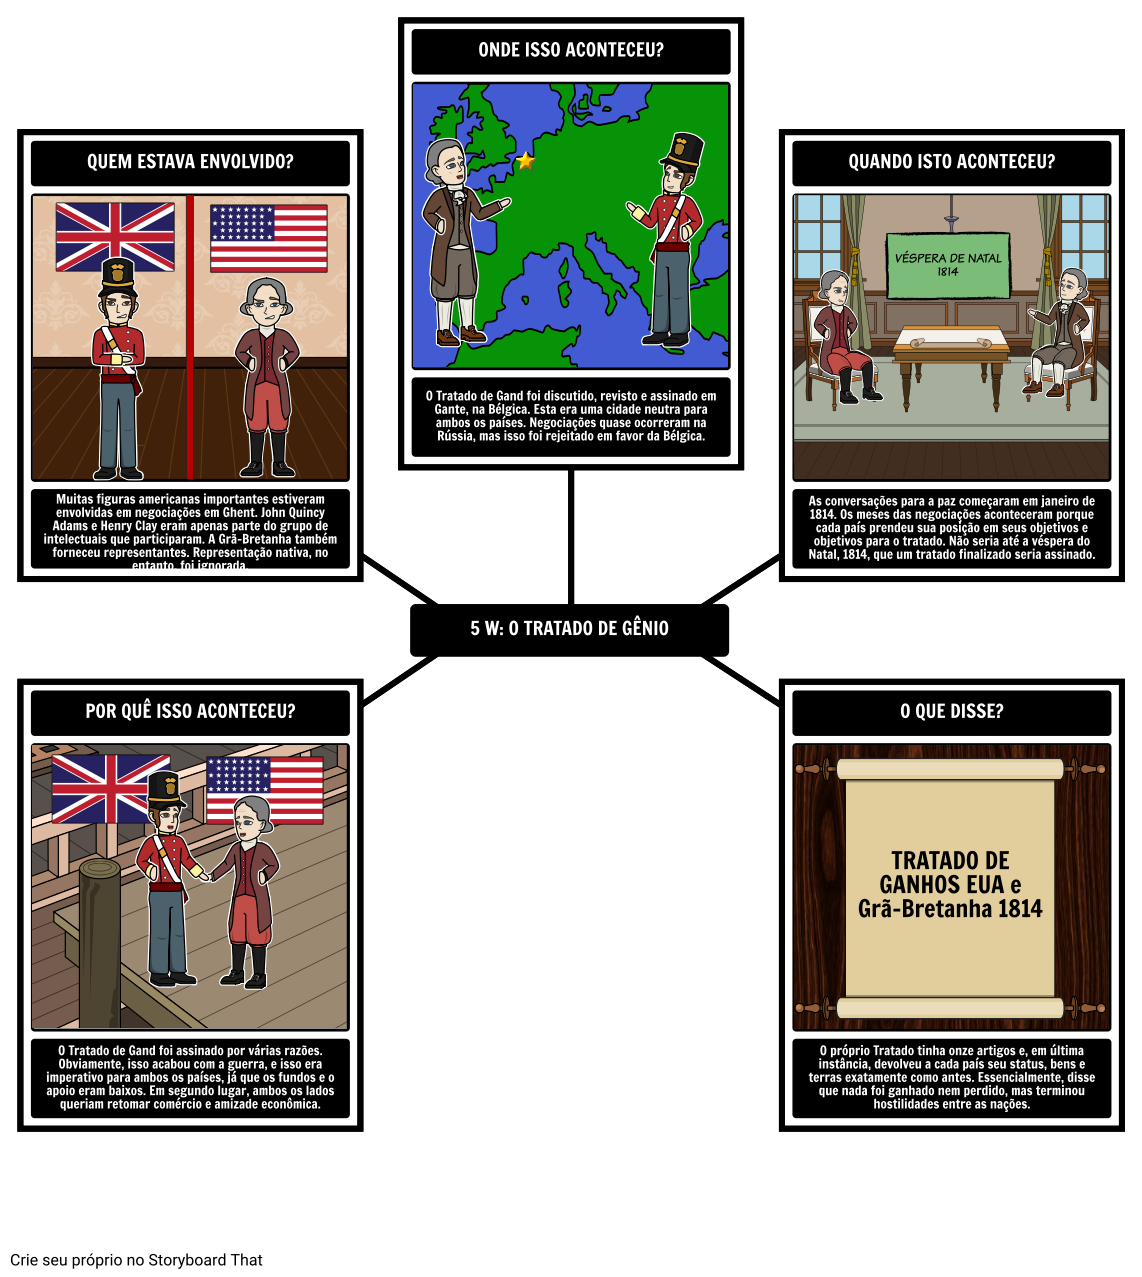 A Guerra de 1812 - 5 Ws do Tratado de Gand